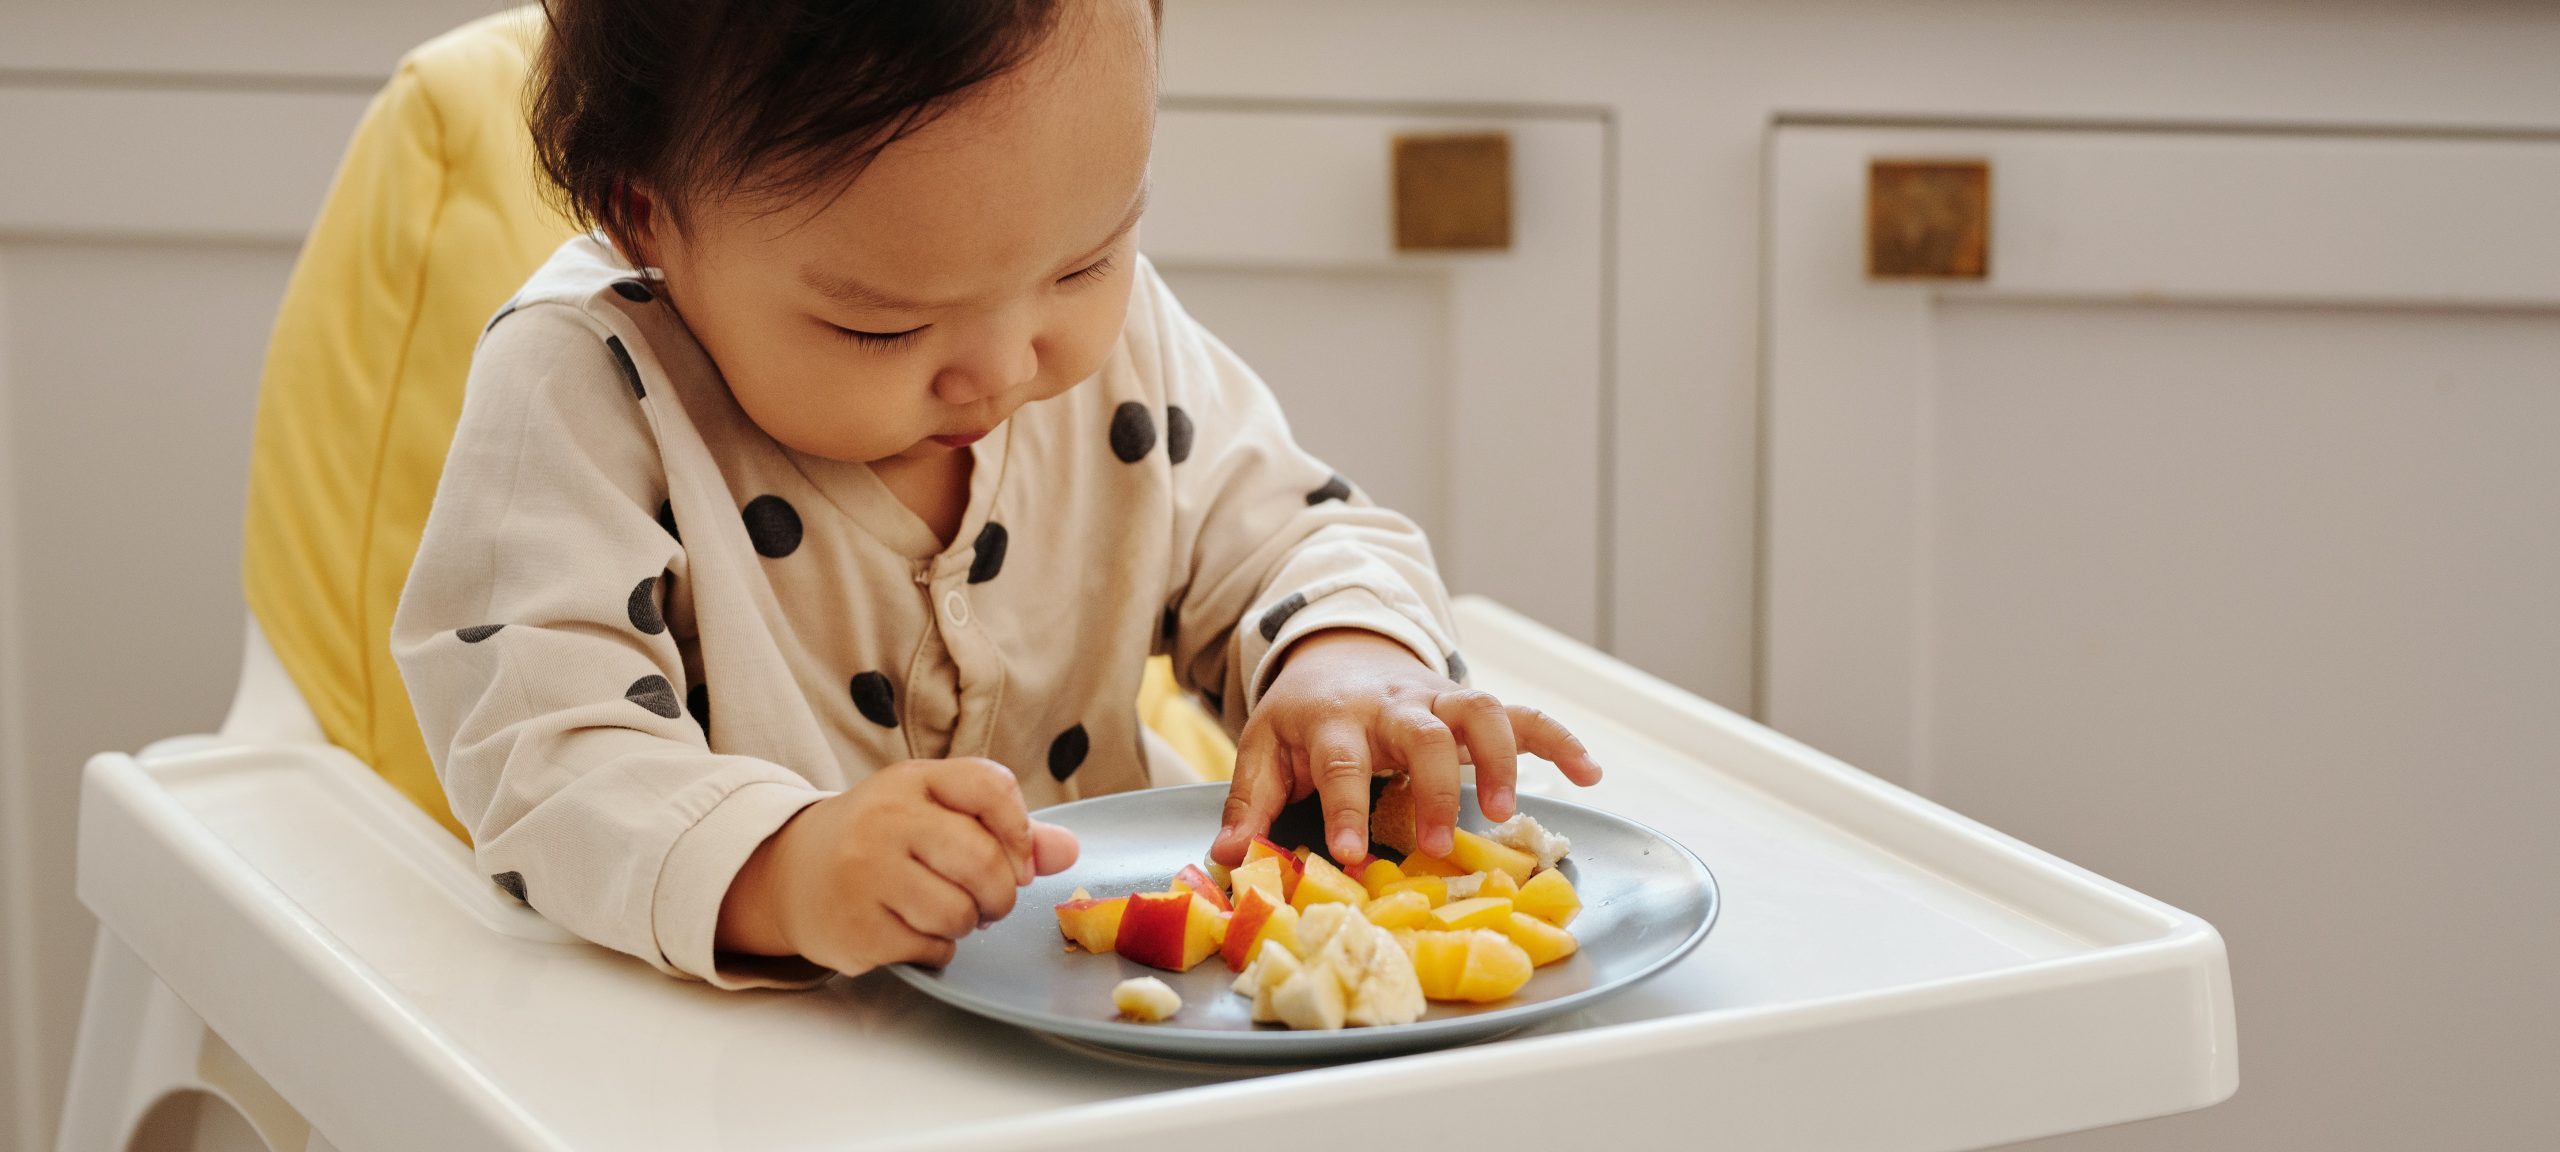 La diversification alimentaire : les premiers repas de bébé - Everykid